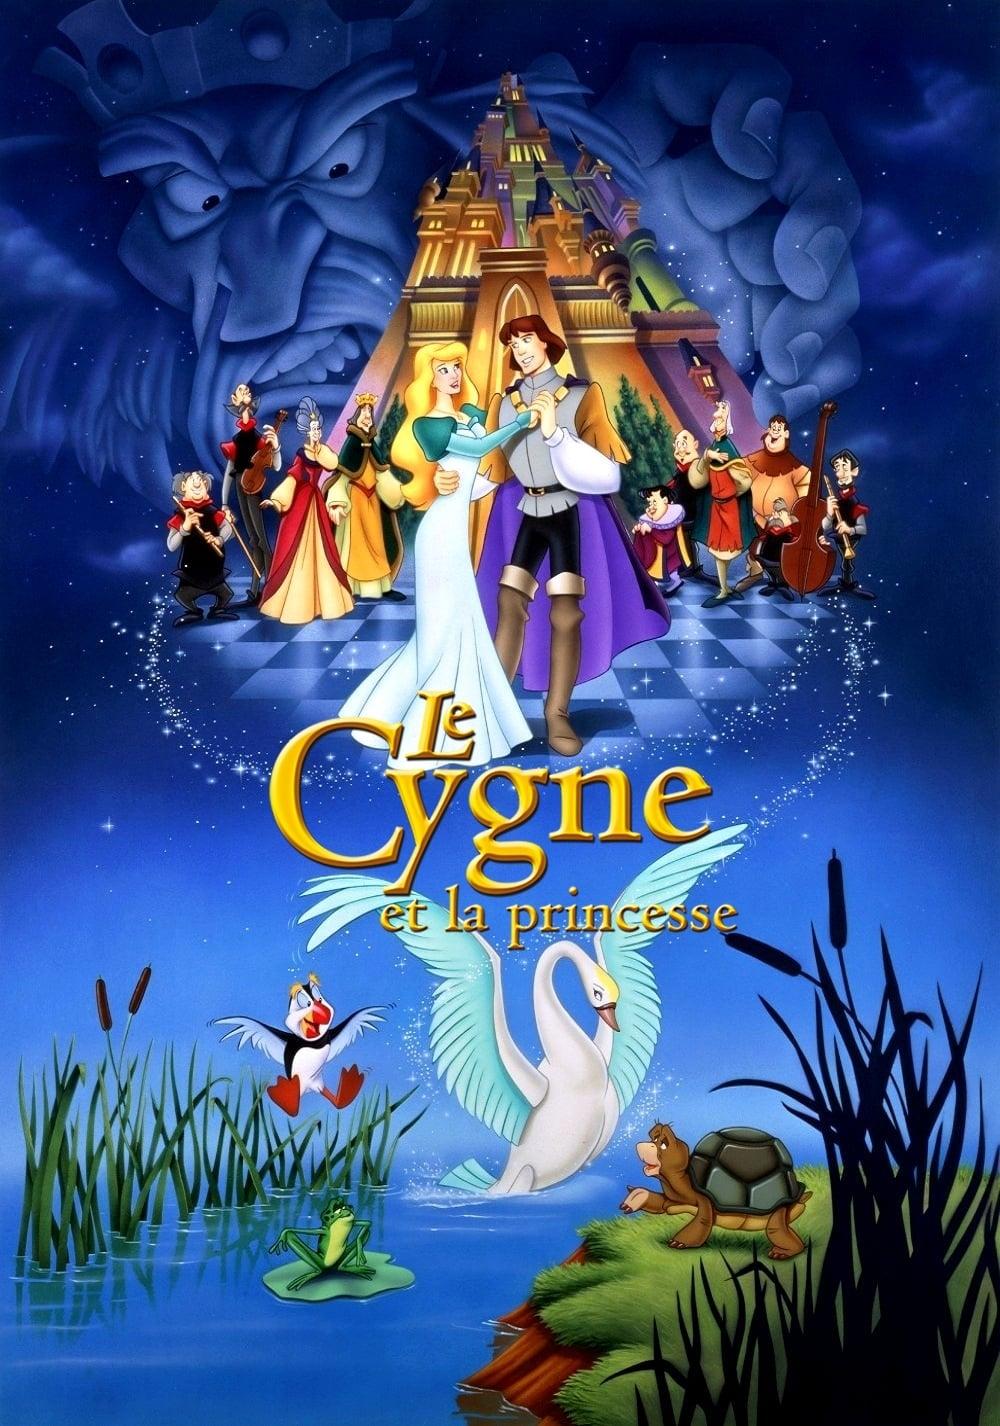 Le Cygne et la Princesse est-il disponible sur Netflix ou autre ?